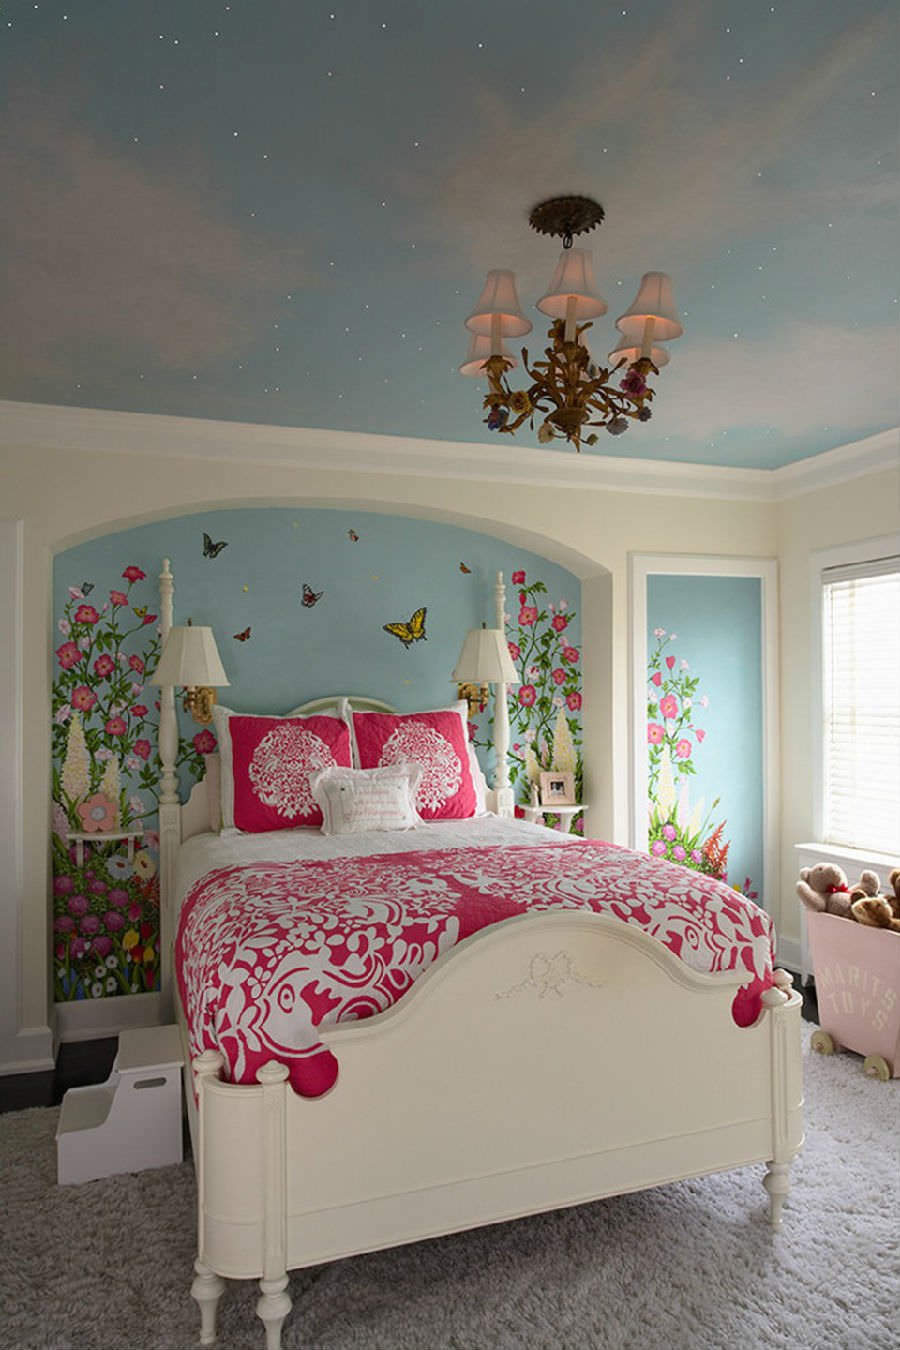 Idee cameretta ragazza con il muro dietro il letto e il soffitto dipinto per creare un'atmosfera da favola